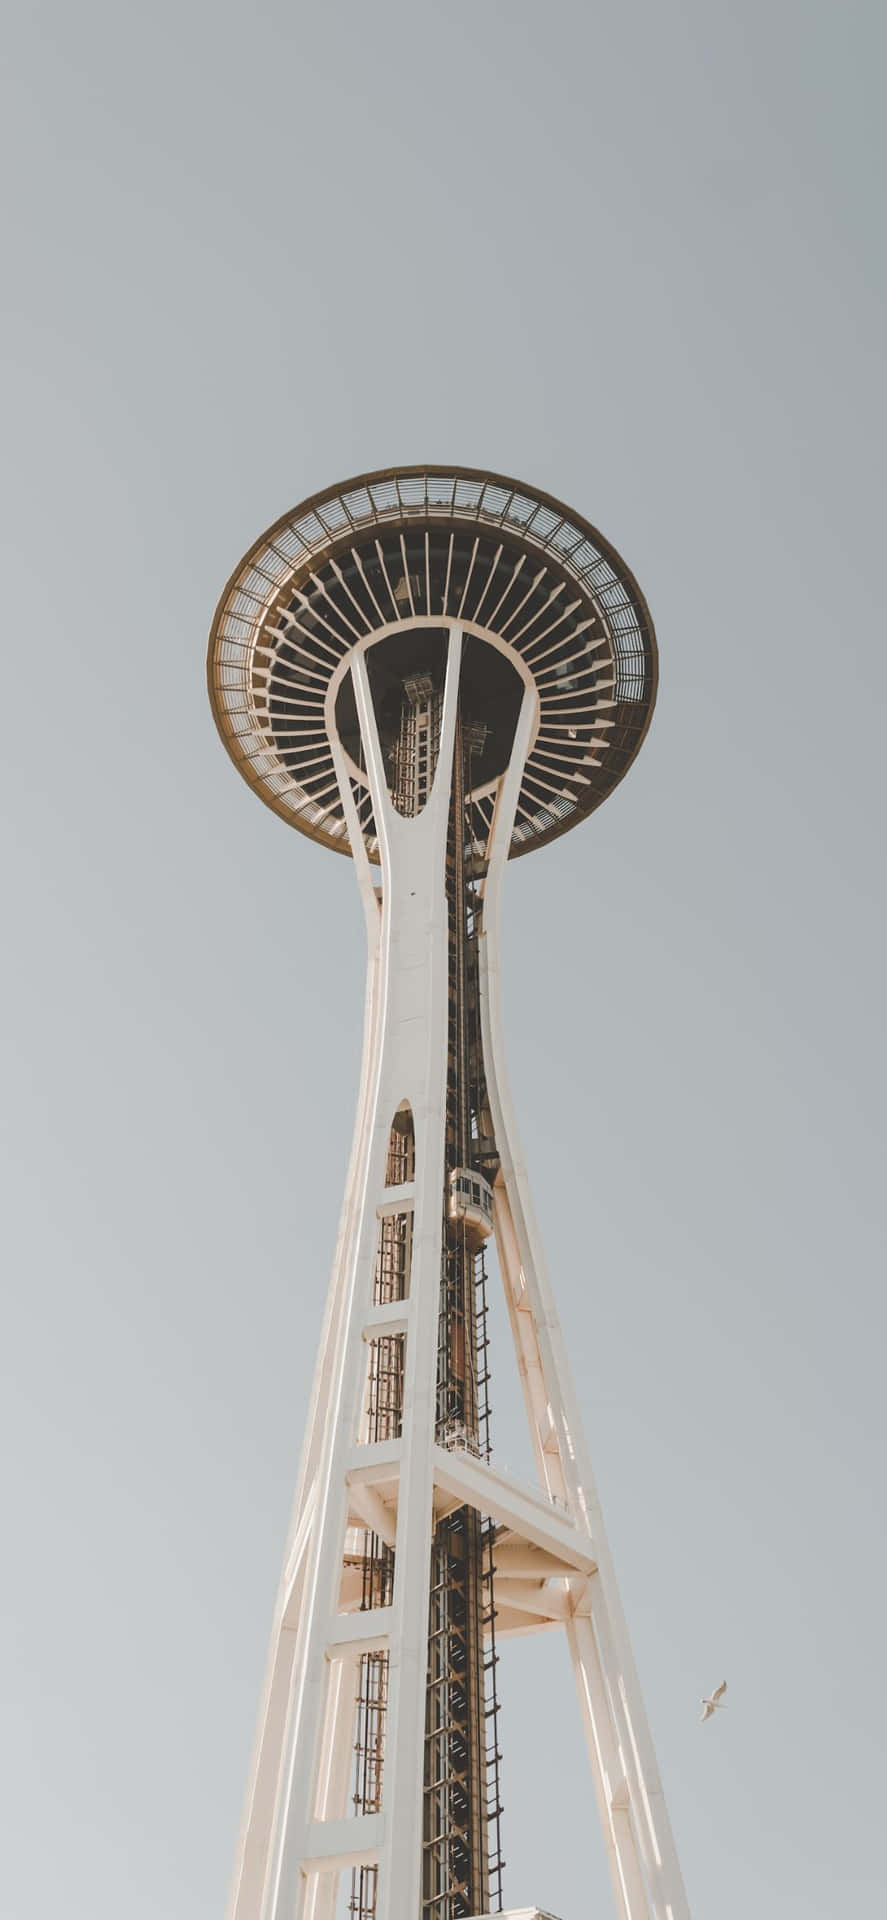 Disfrutadel Impresionante Horizonte De Seattle Desde La Perspectiva De Un Iphone X.